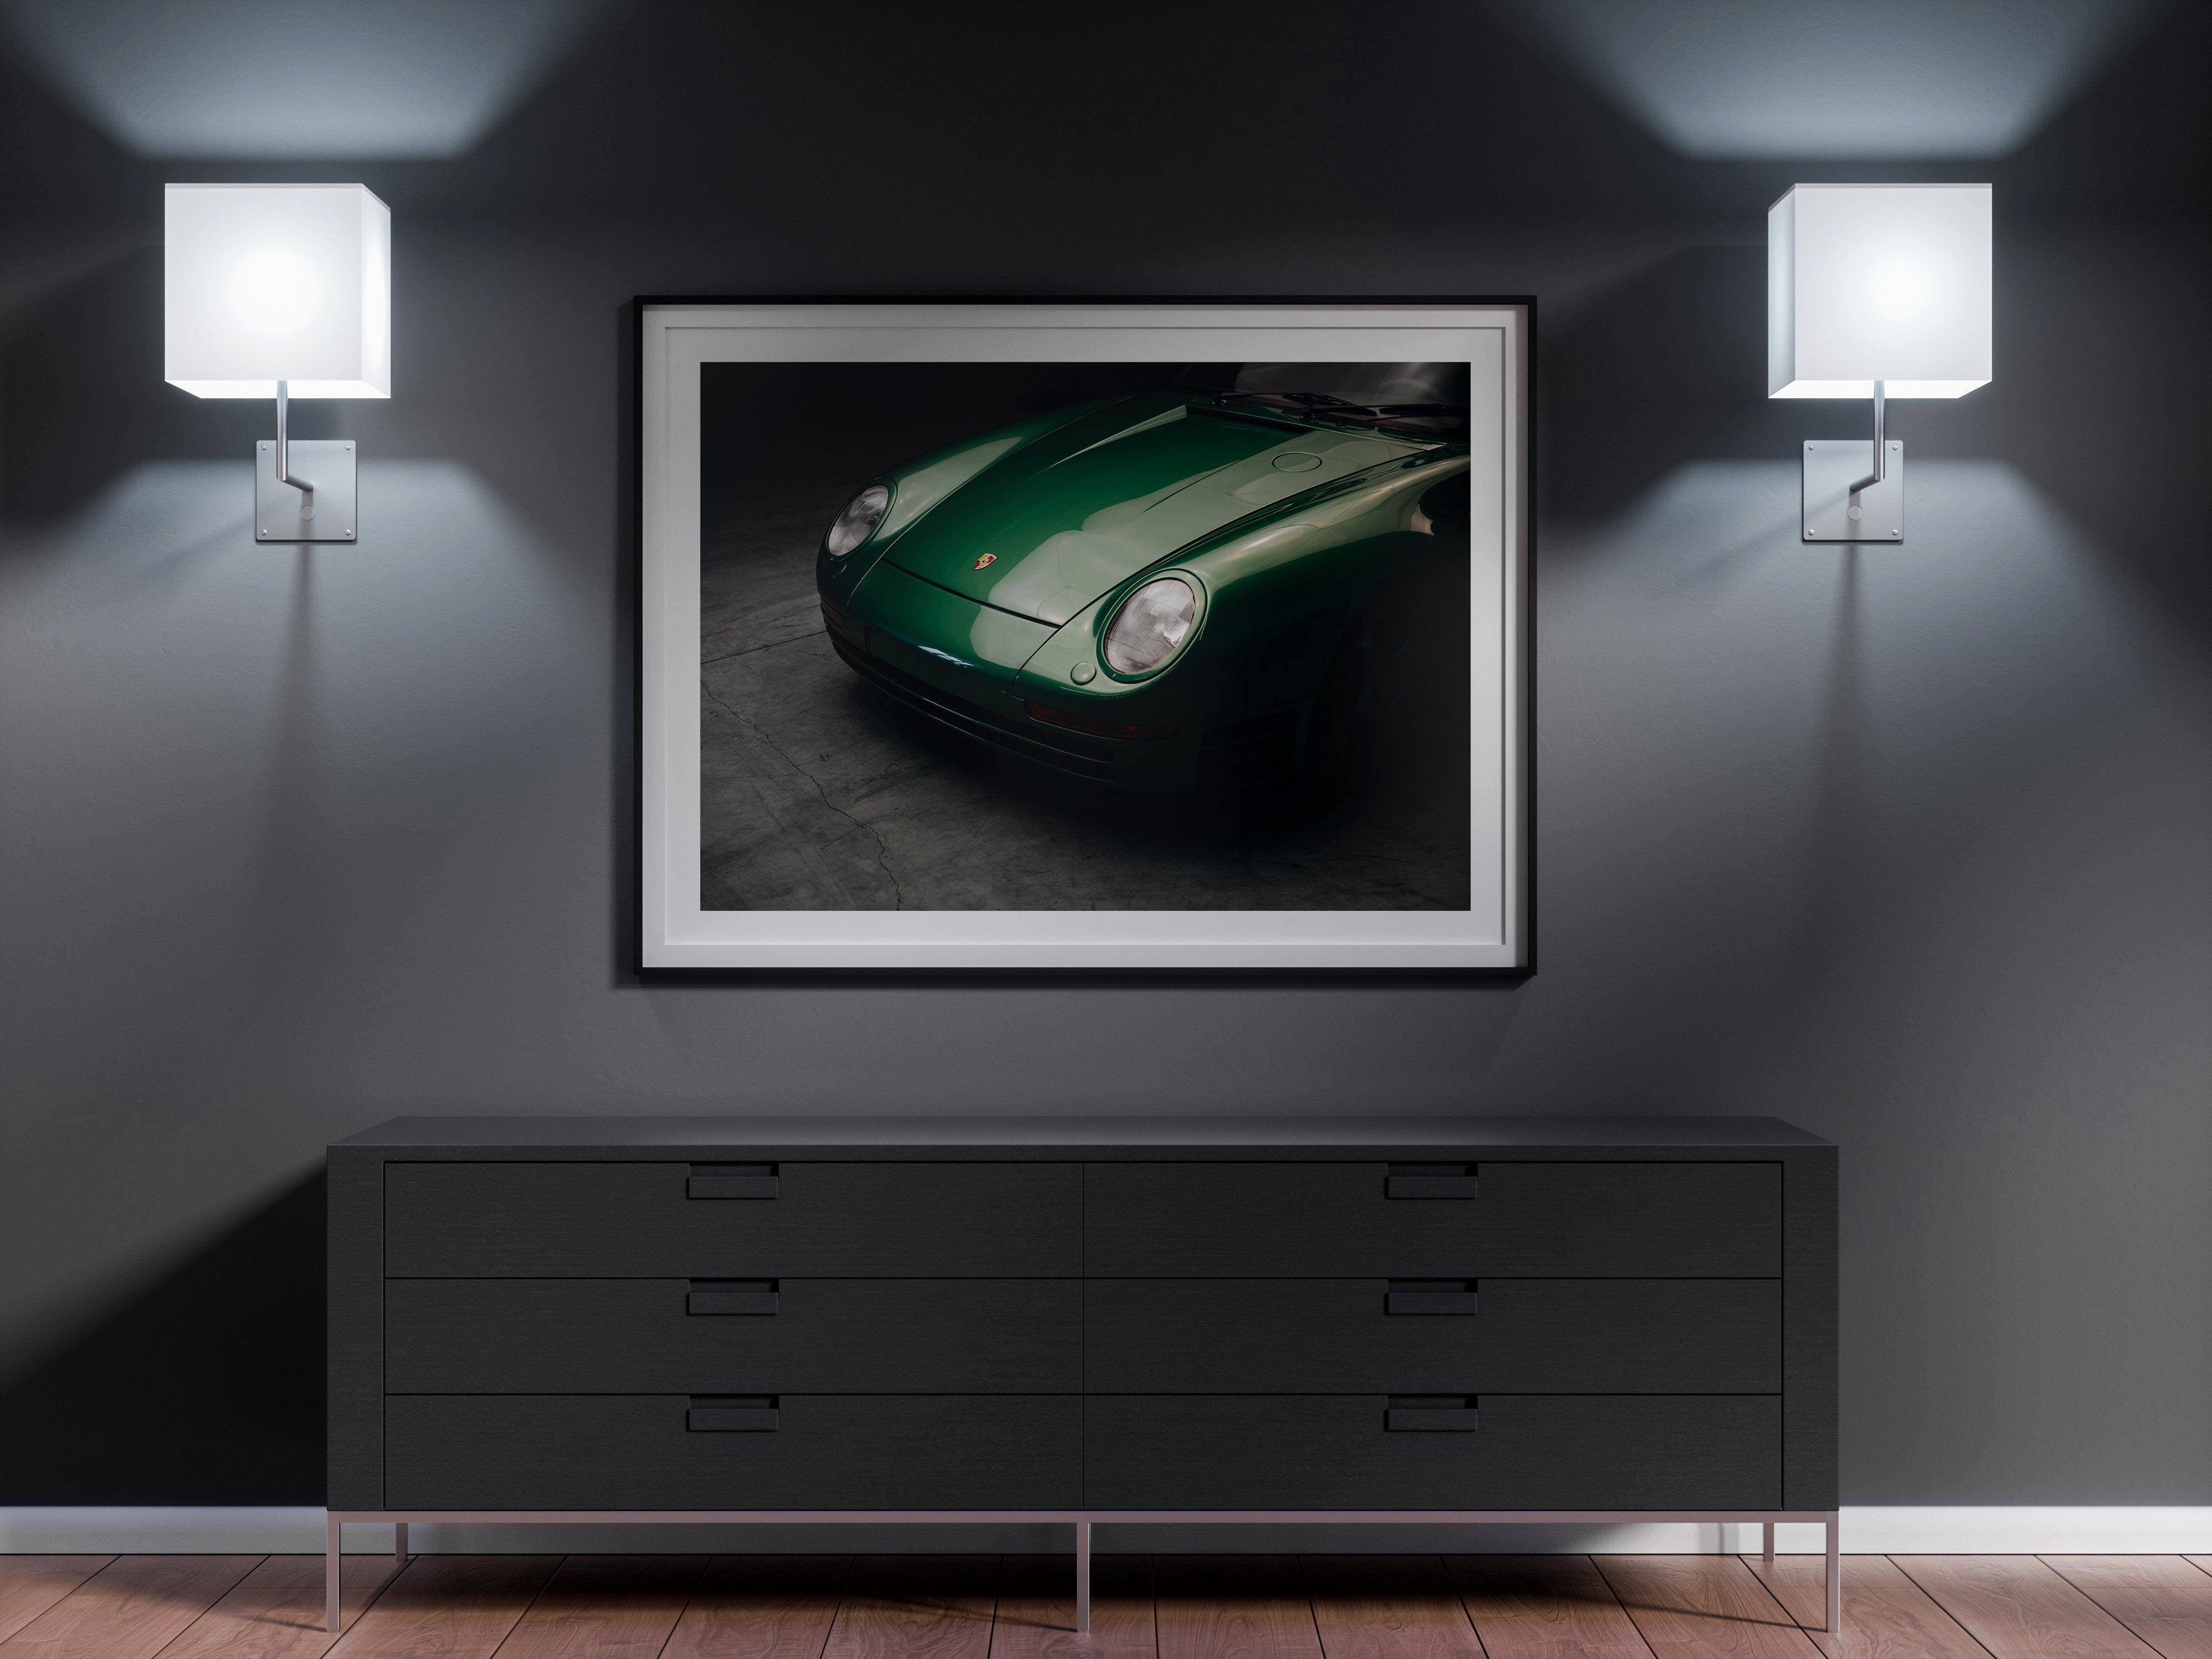 Green Porsche 959 Print